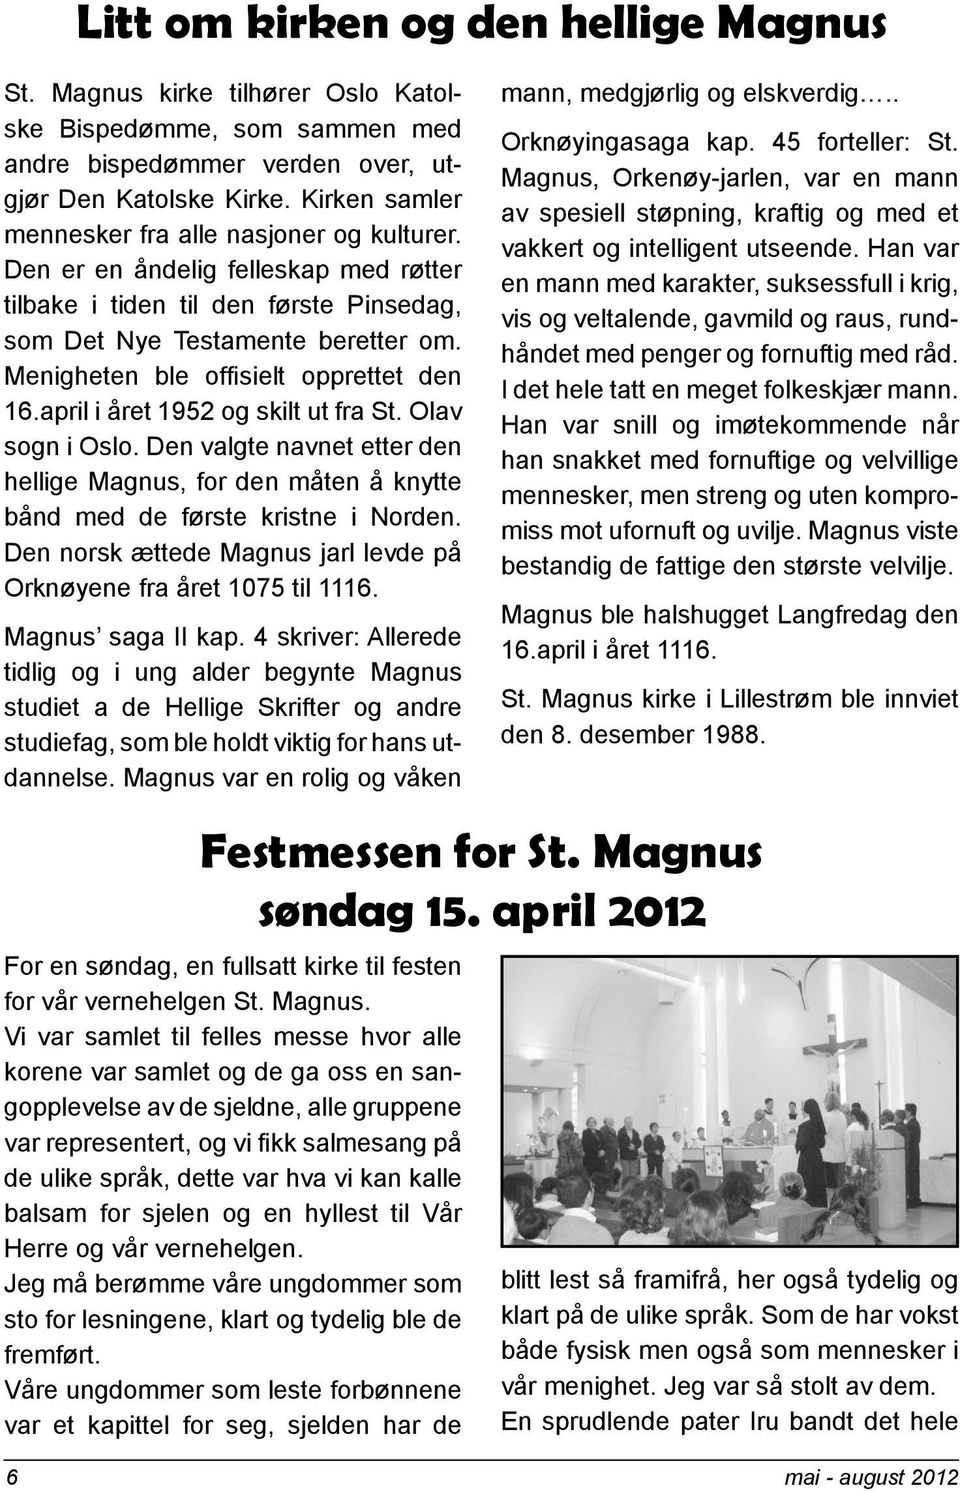 Menigheten ble offisielt opprettet den 16.april i året 1952 og skilt ut fra St. Olav sogn i Oslo.